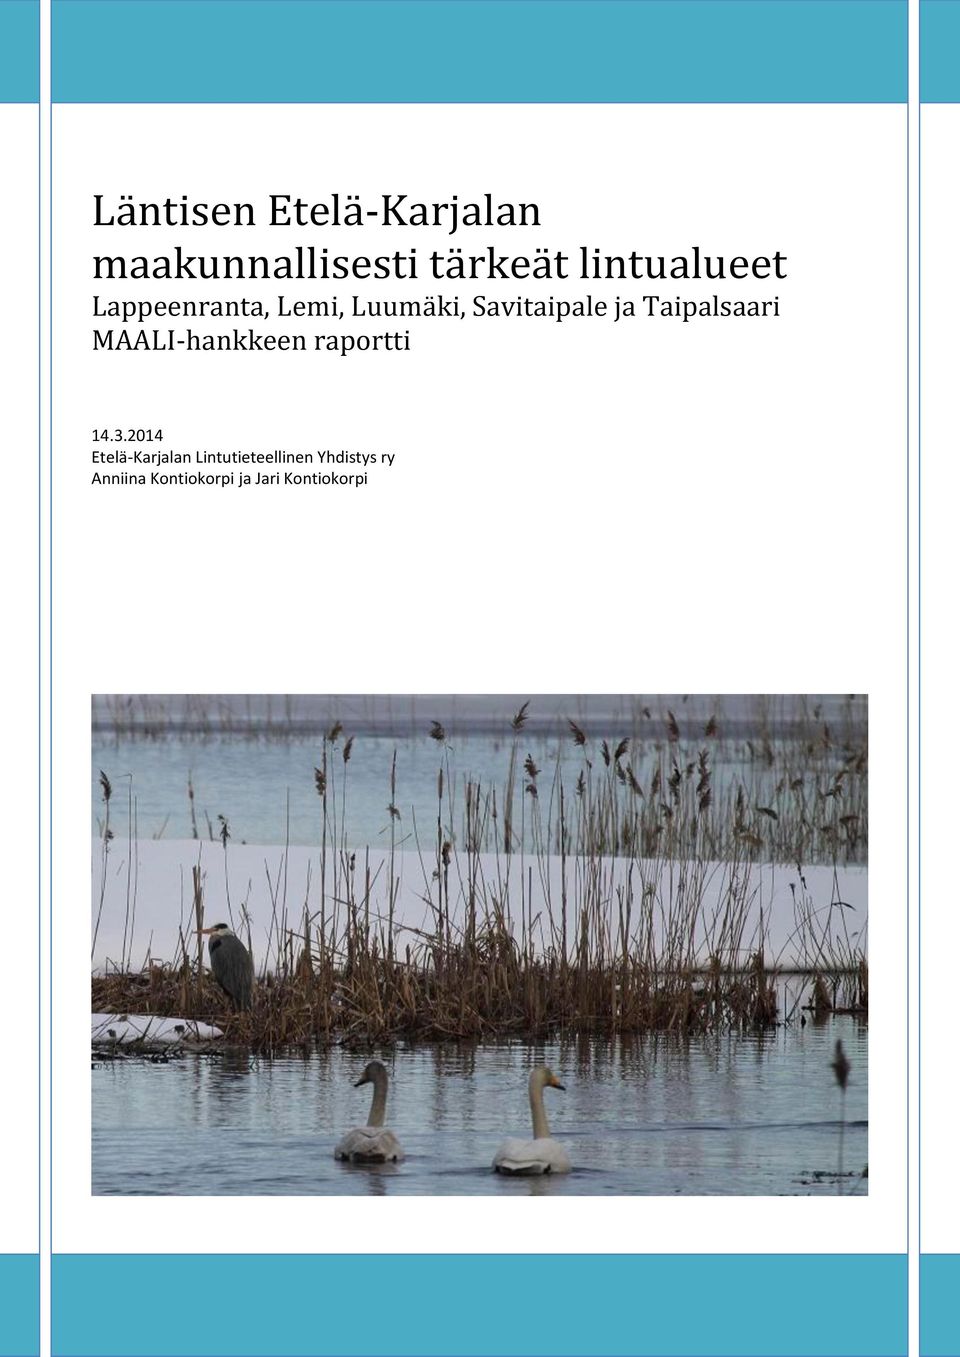 Taipalsaari MAALI-hankkeen raportti 14.3.